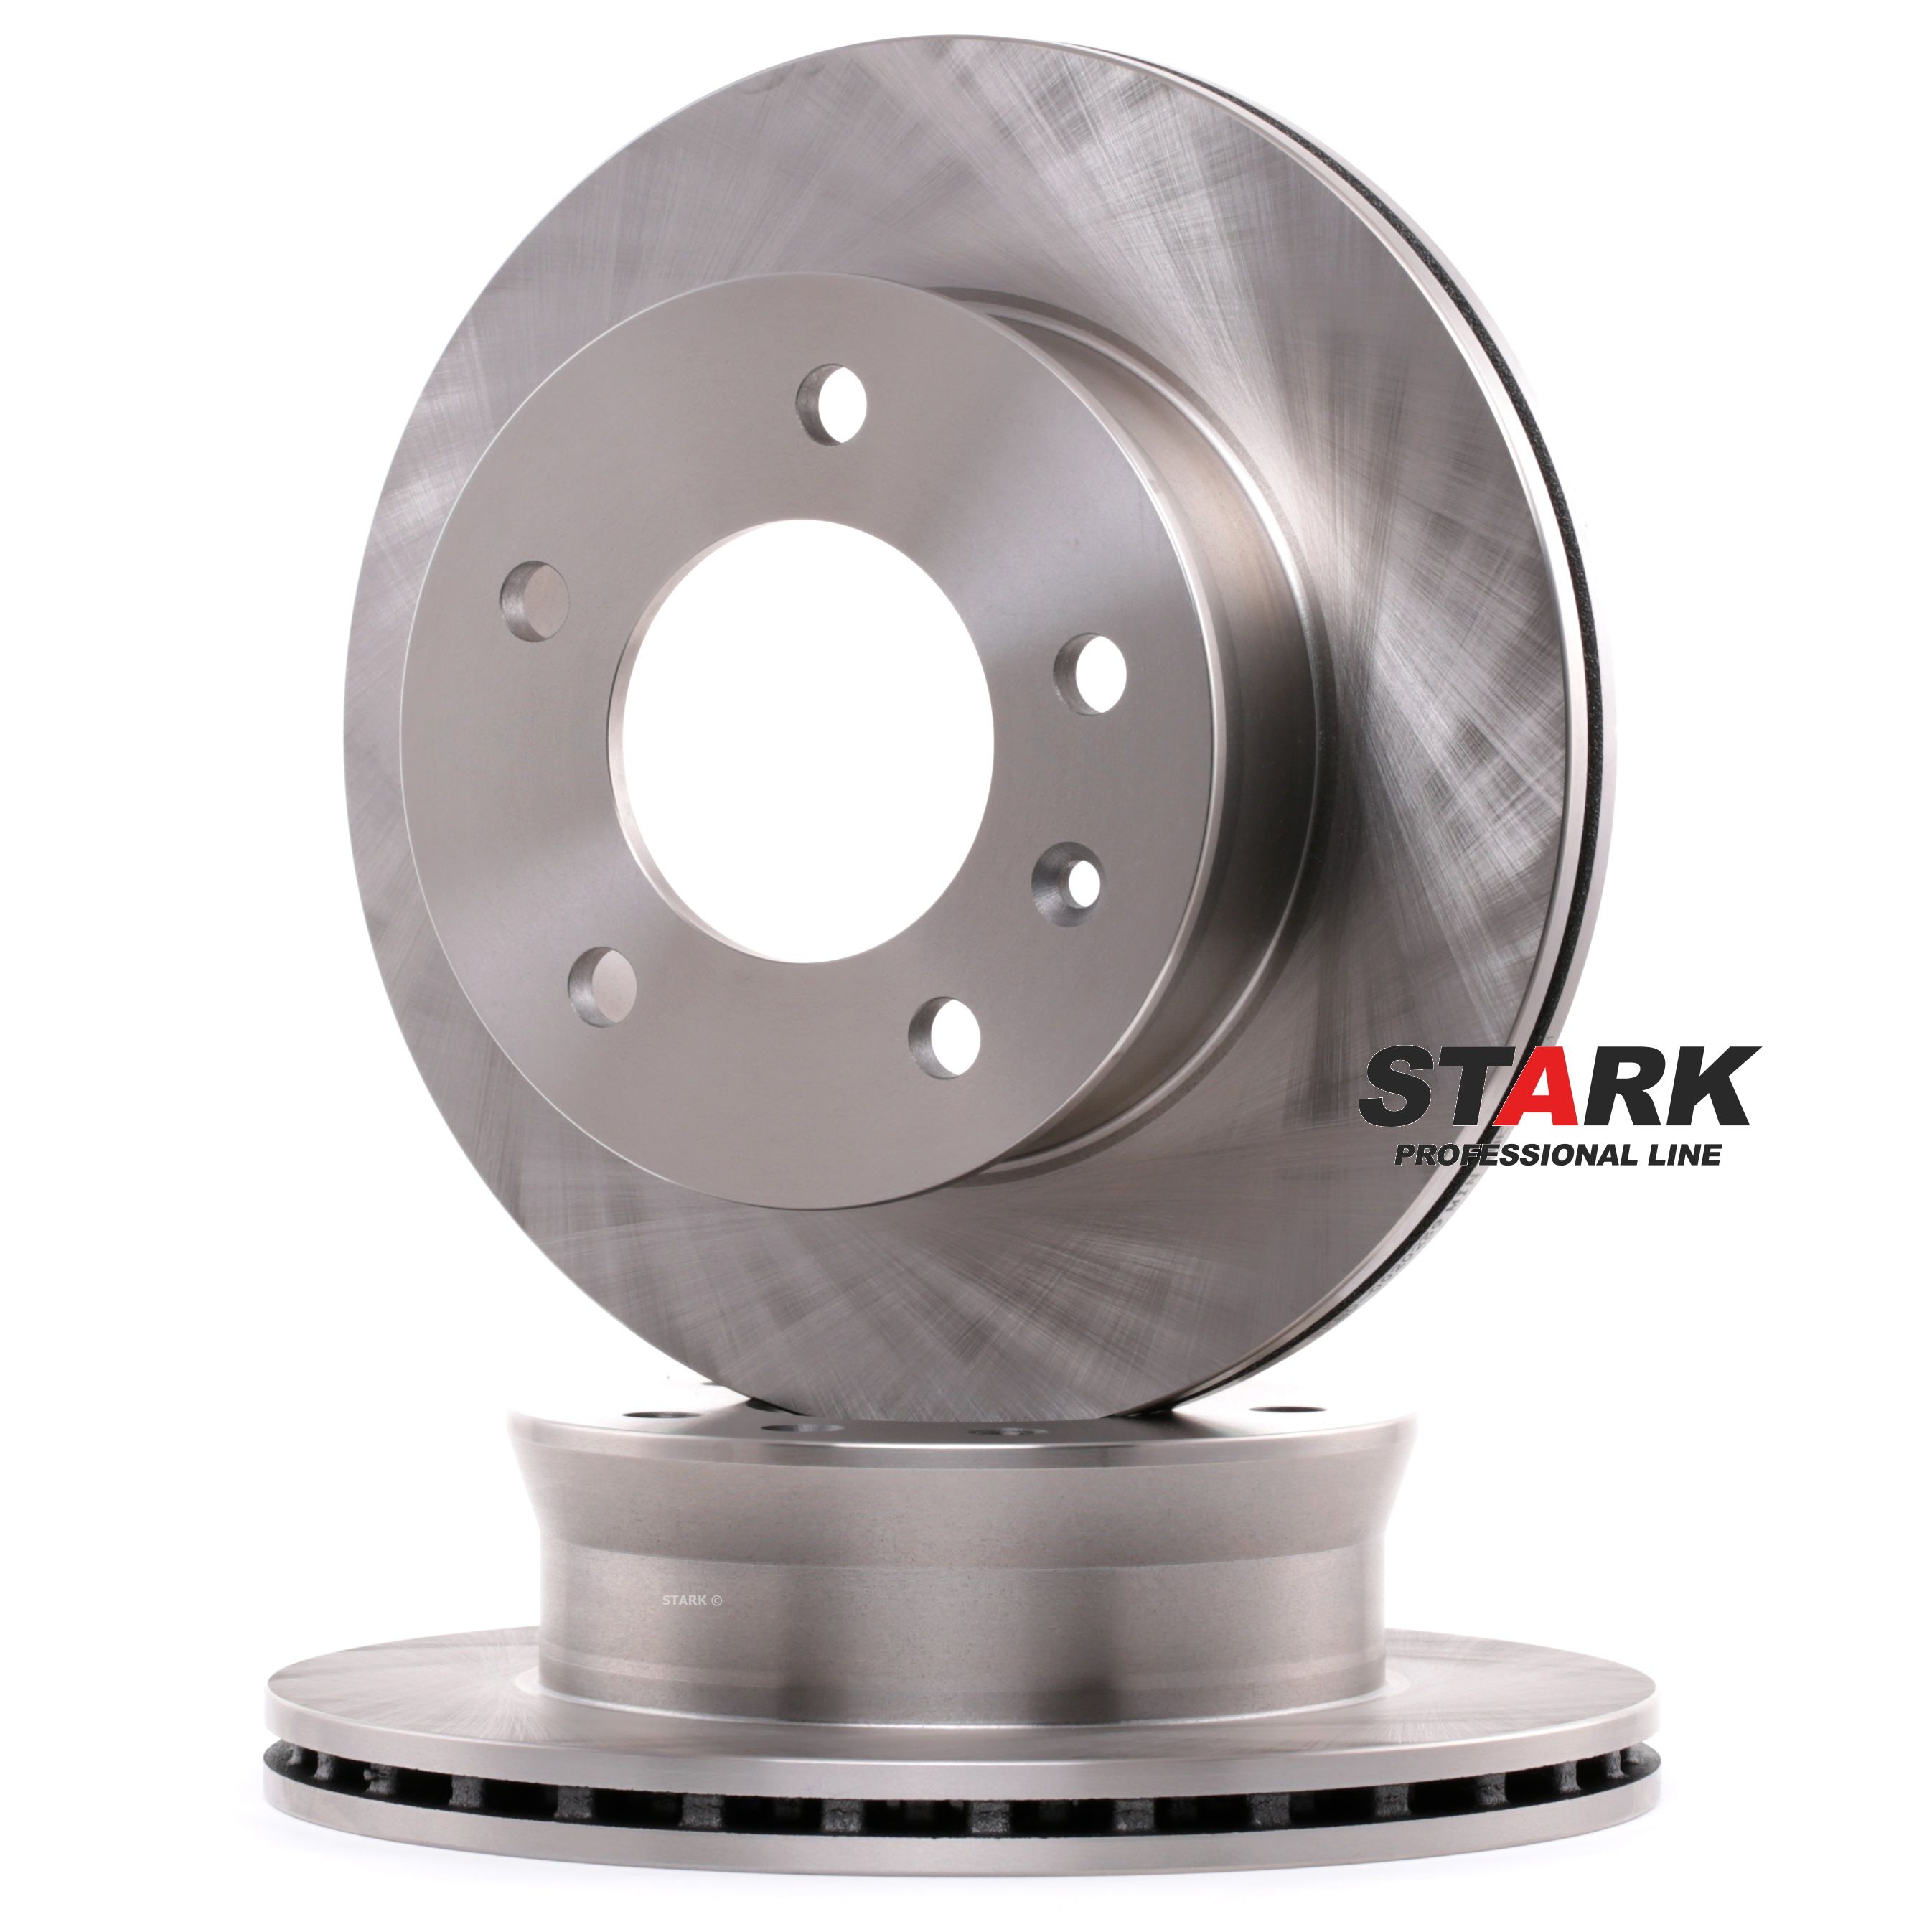 Achetez des Disque de frein STARK SKBD-0020239 à prix modérés